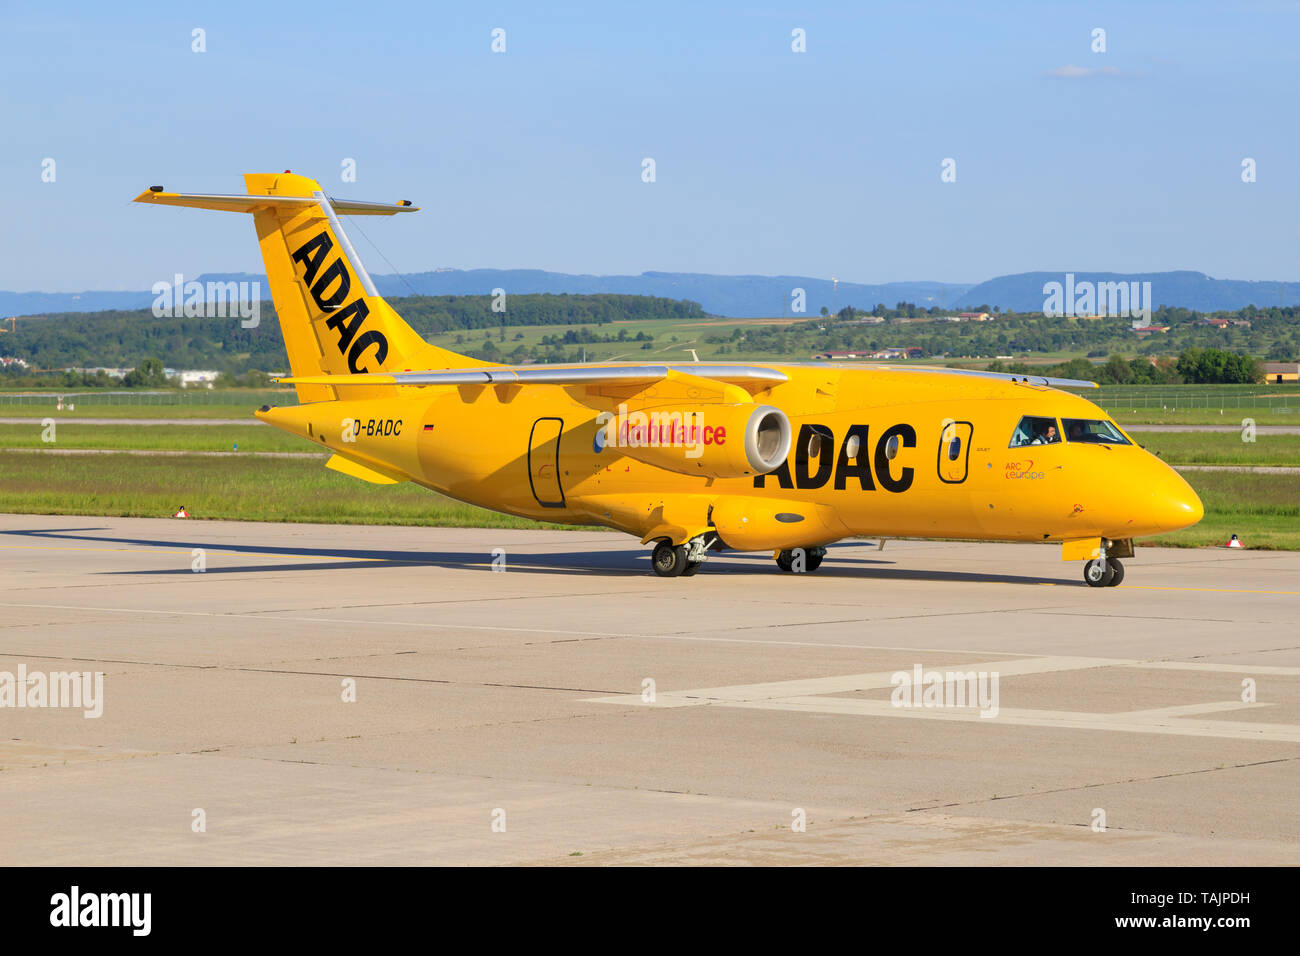 Stuttgart/Allemagne, 22 août 2019 : Donier ADAC de à l'aéroport de Stuttgart. Banque D'Images